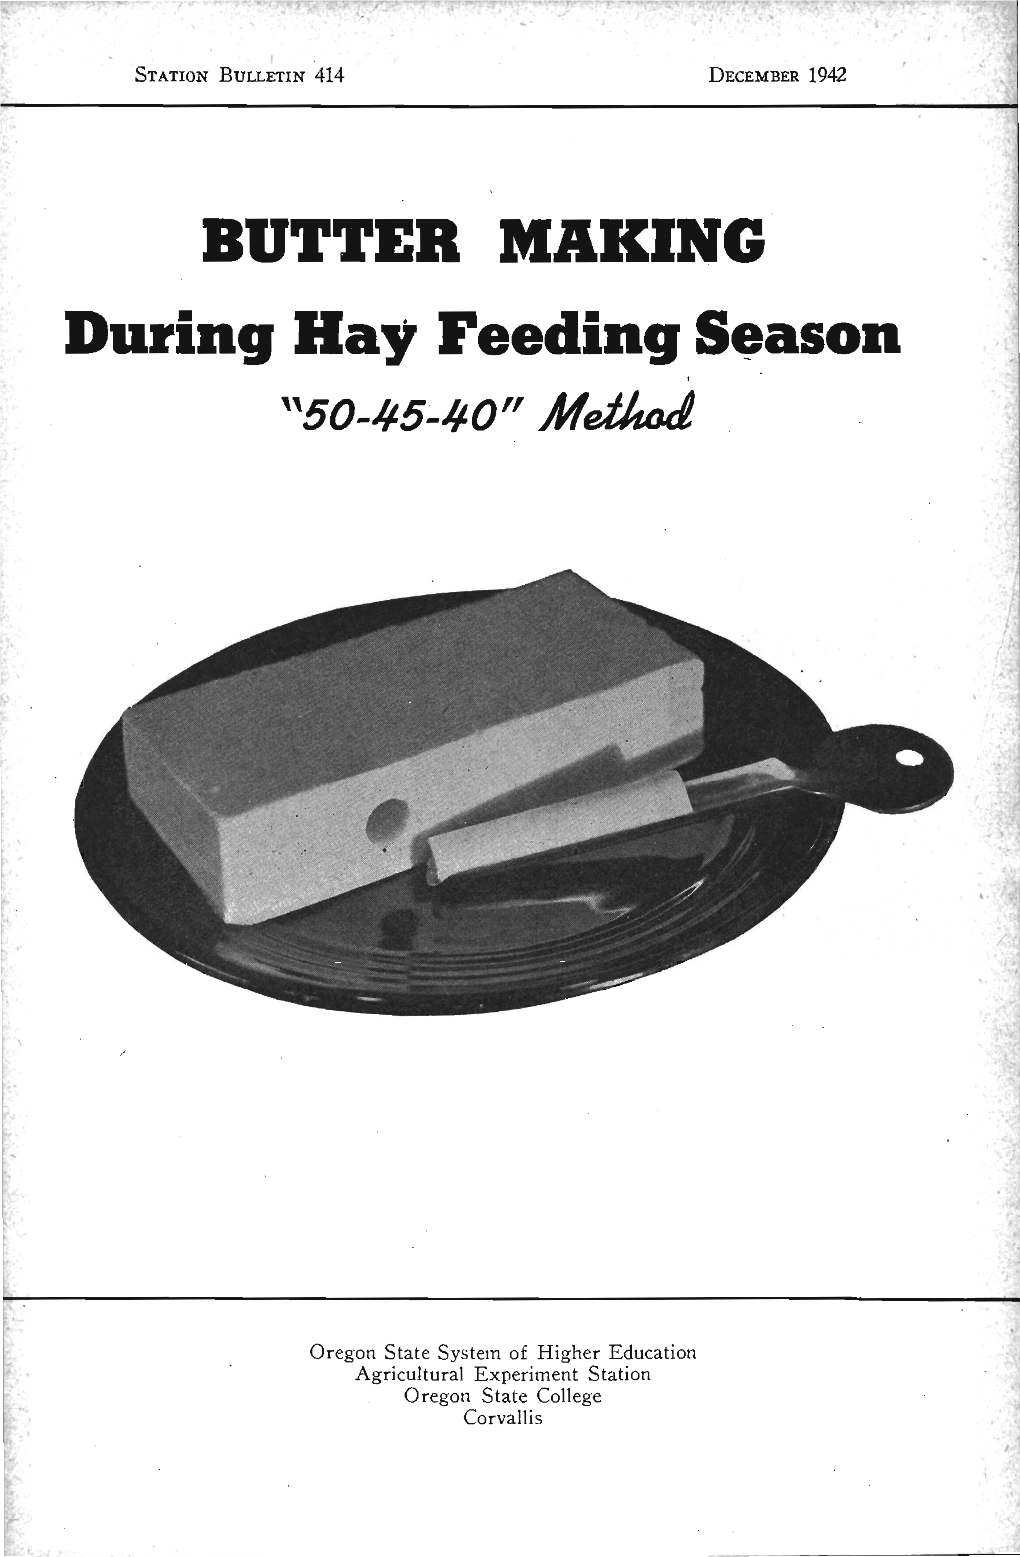 During Hay Feeding Season "50-45-40" Iweihad